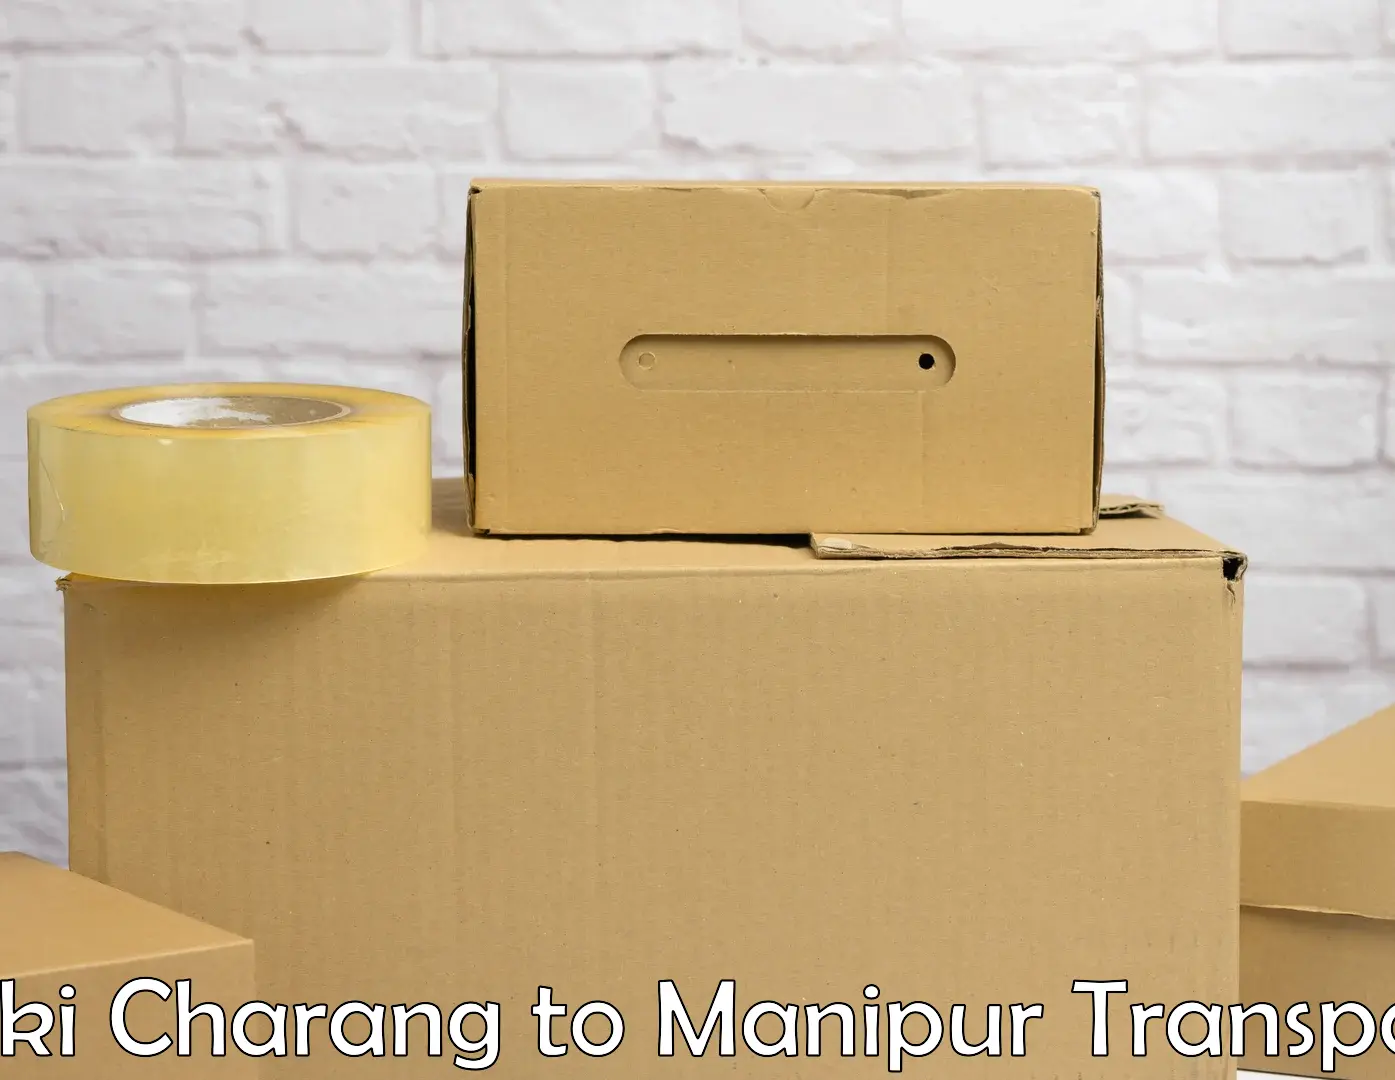 Two wheeler parcel service Saki Charang to NIT Manipur